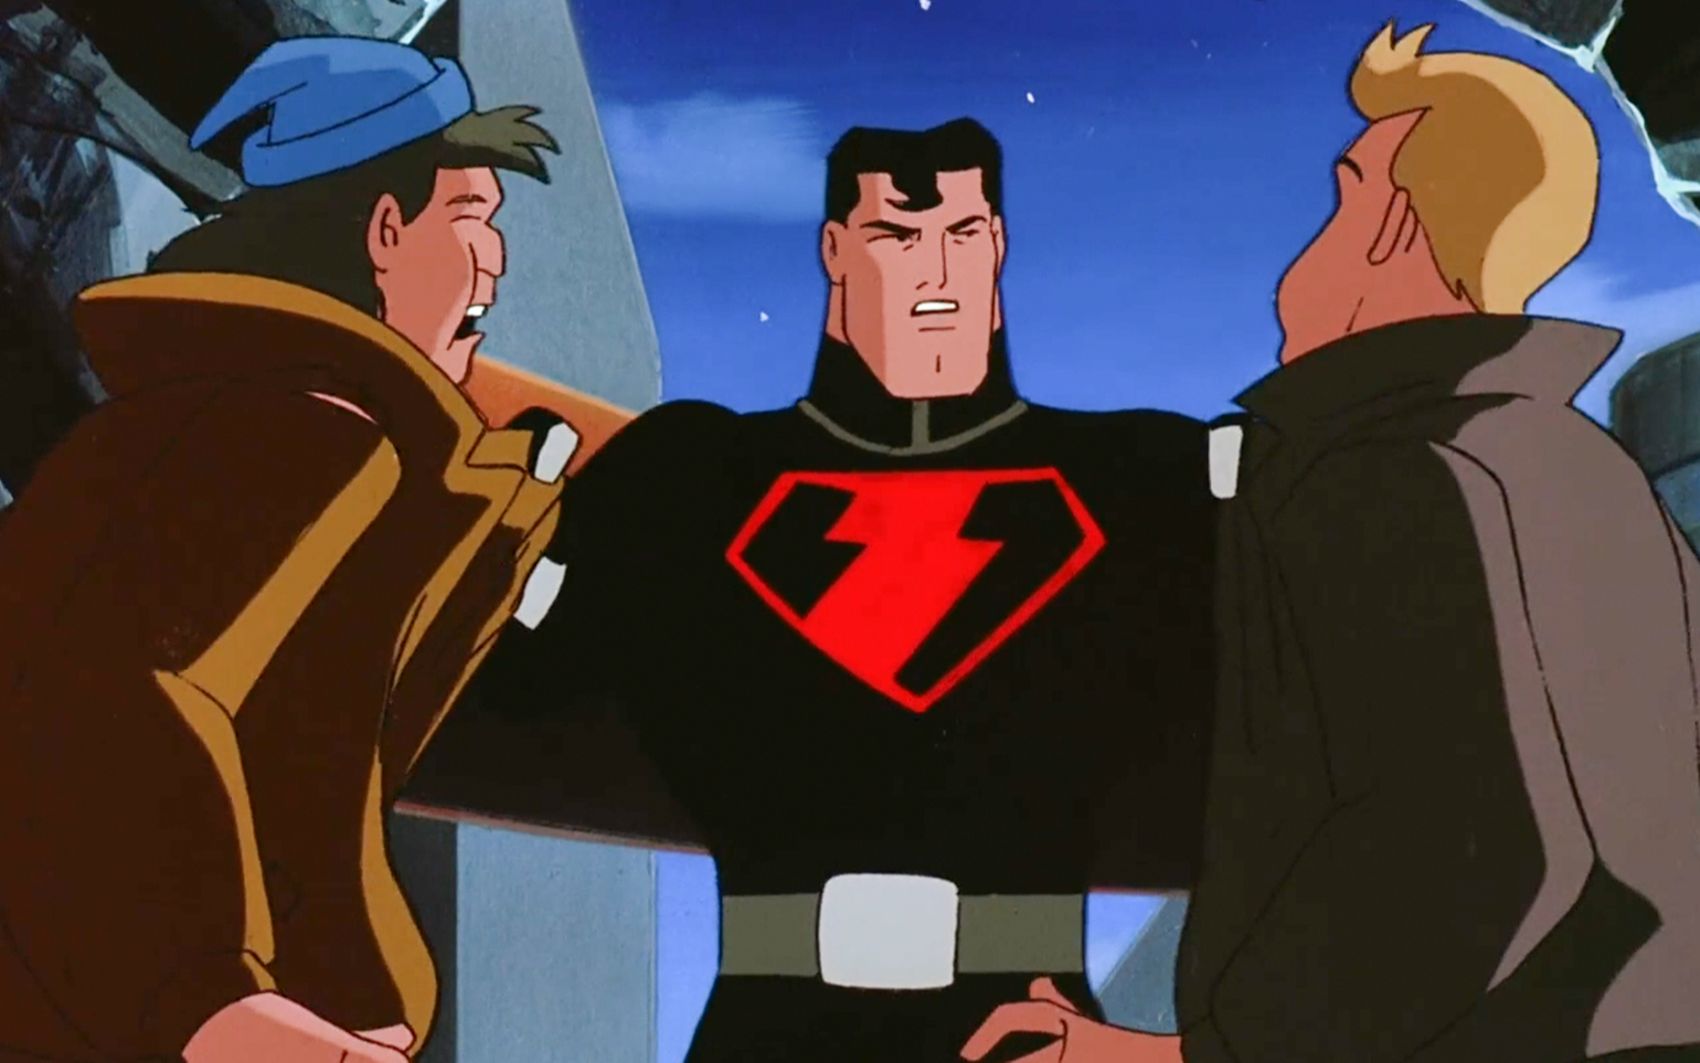 没想到96版《超人》动画,竟然已经出现不义超人的构想